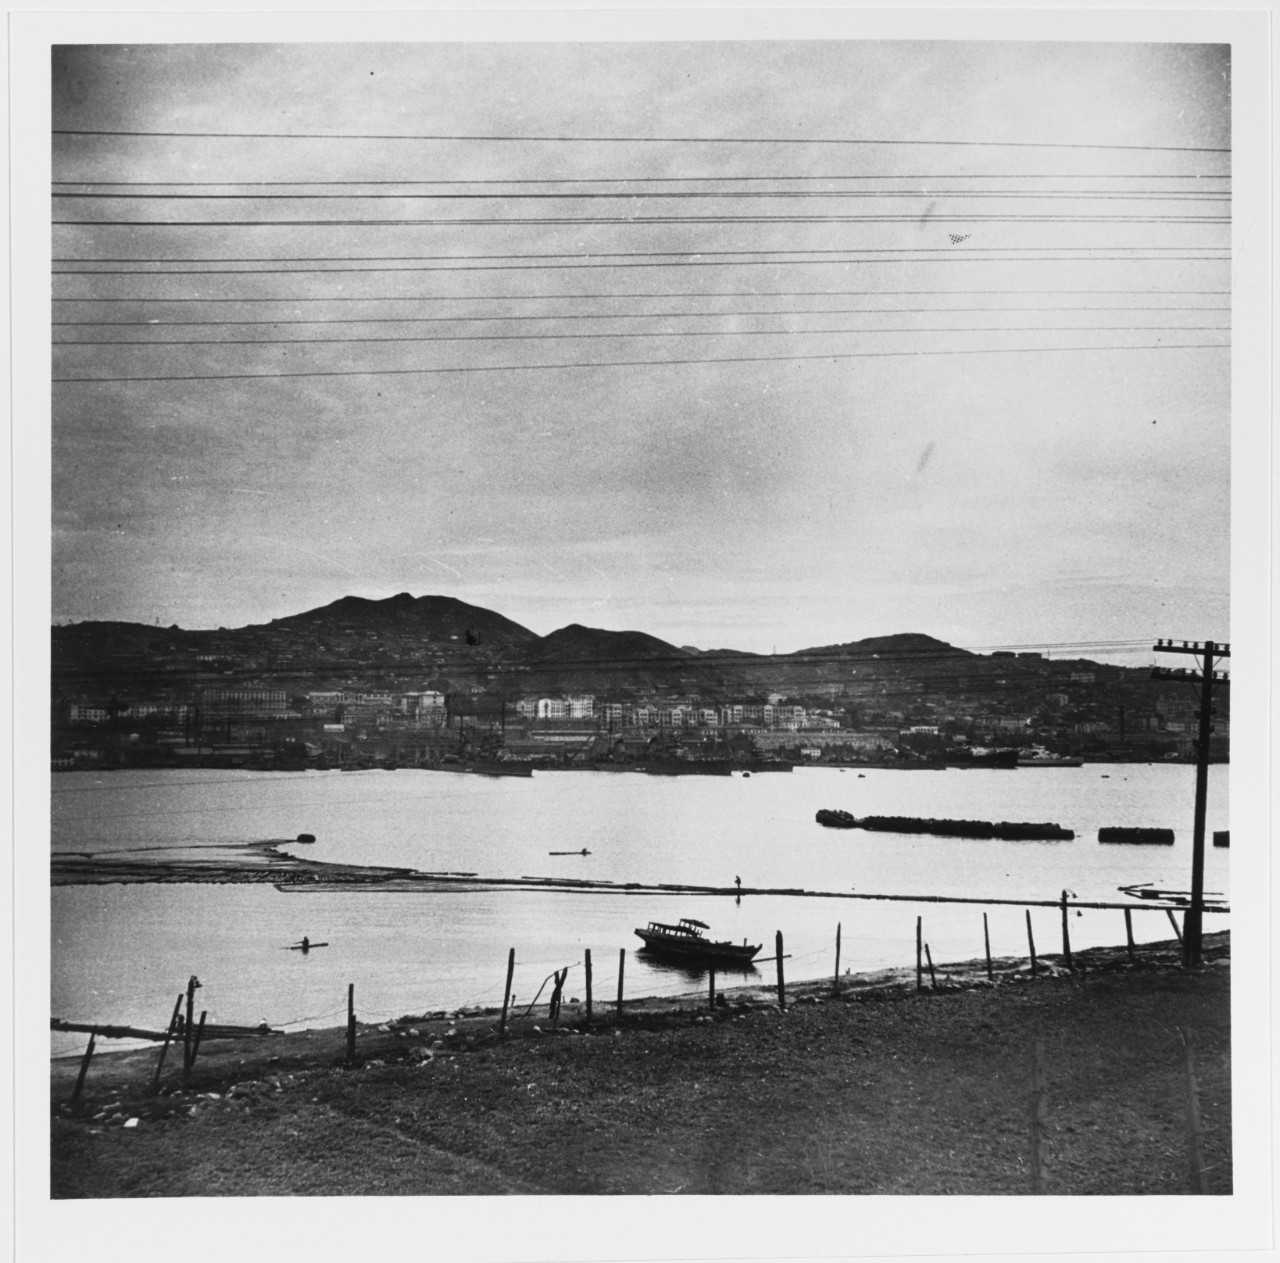 Soviet Naval Base at Vladivostok, U.S.S.R., in 1946